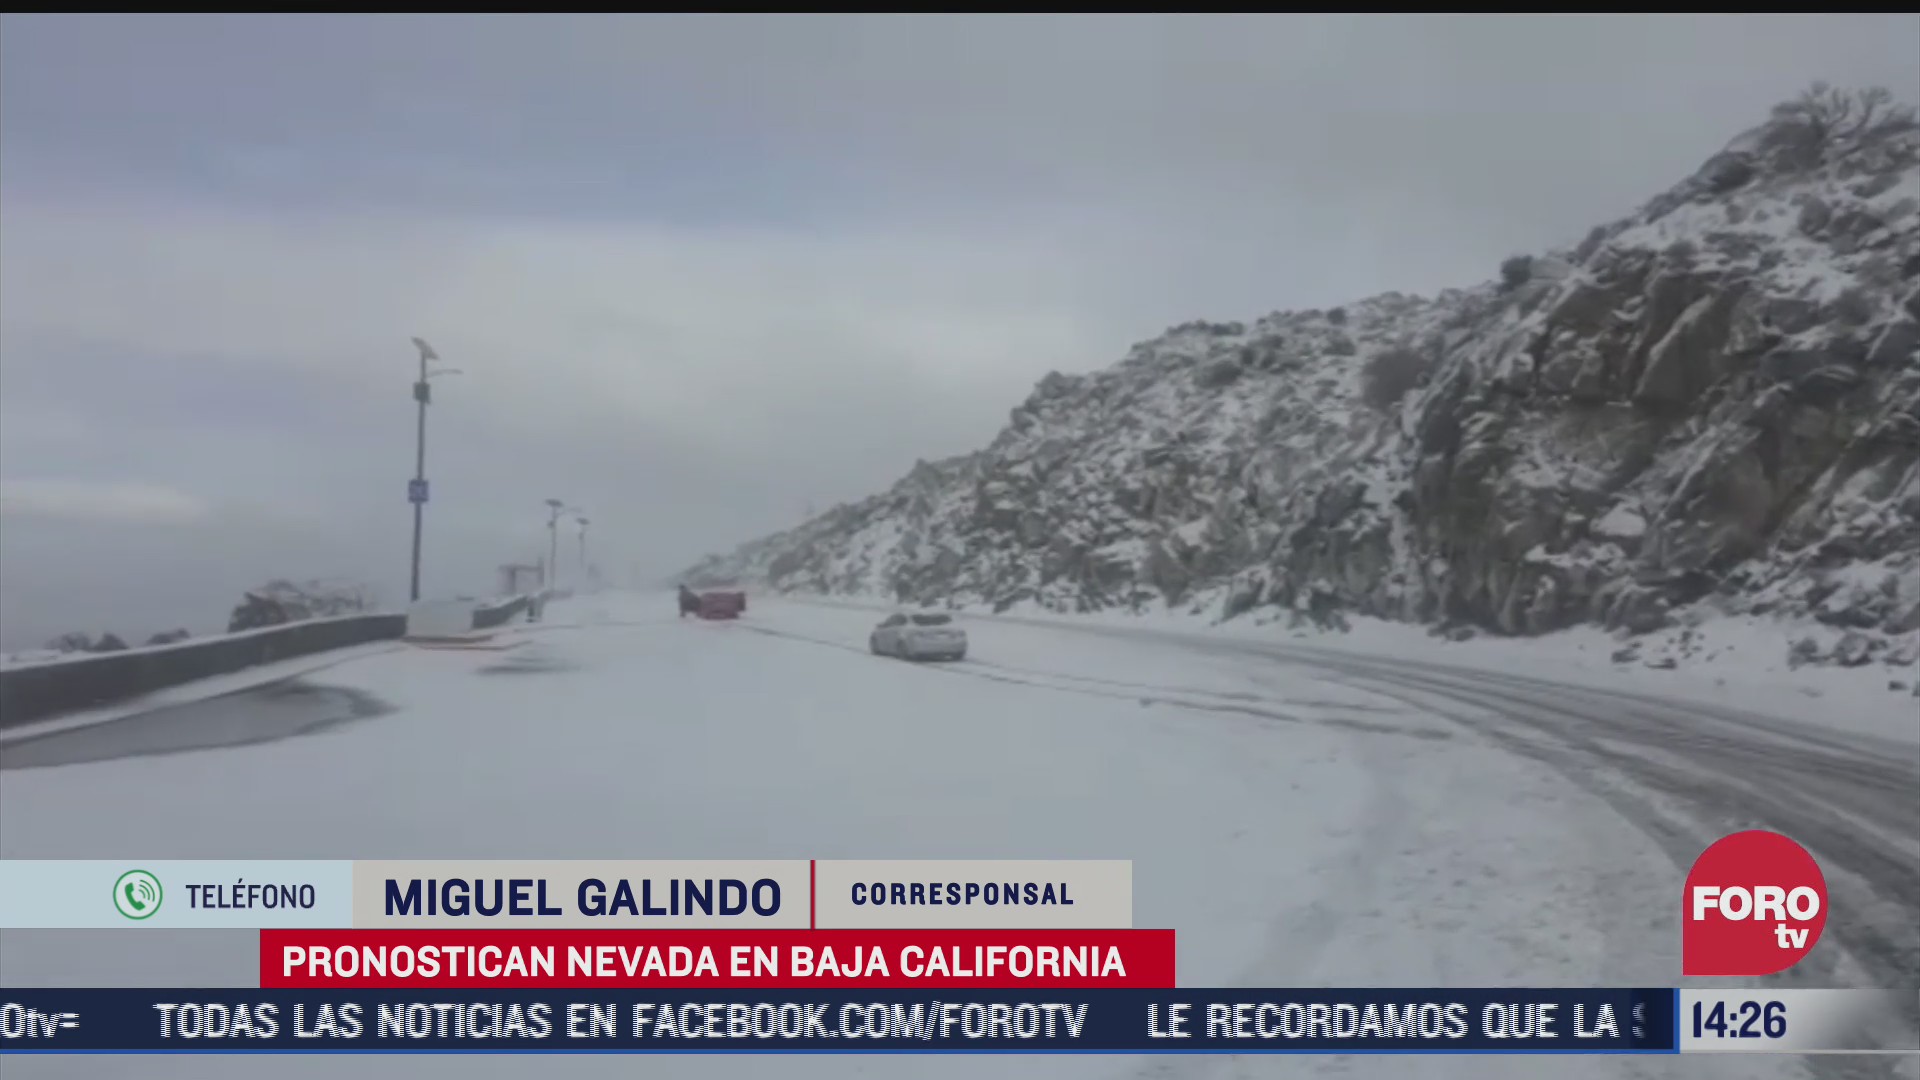 pronostican nueva nevada en baja california